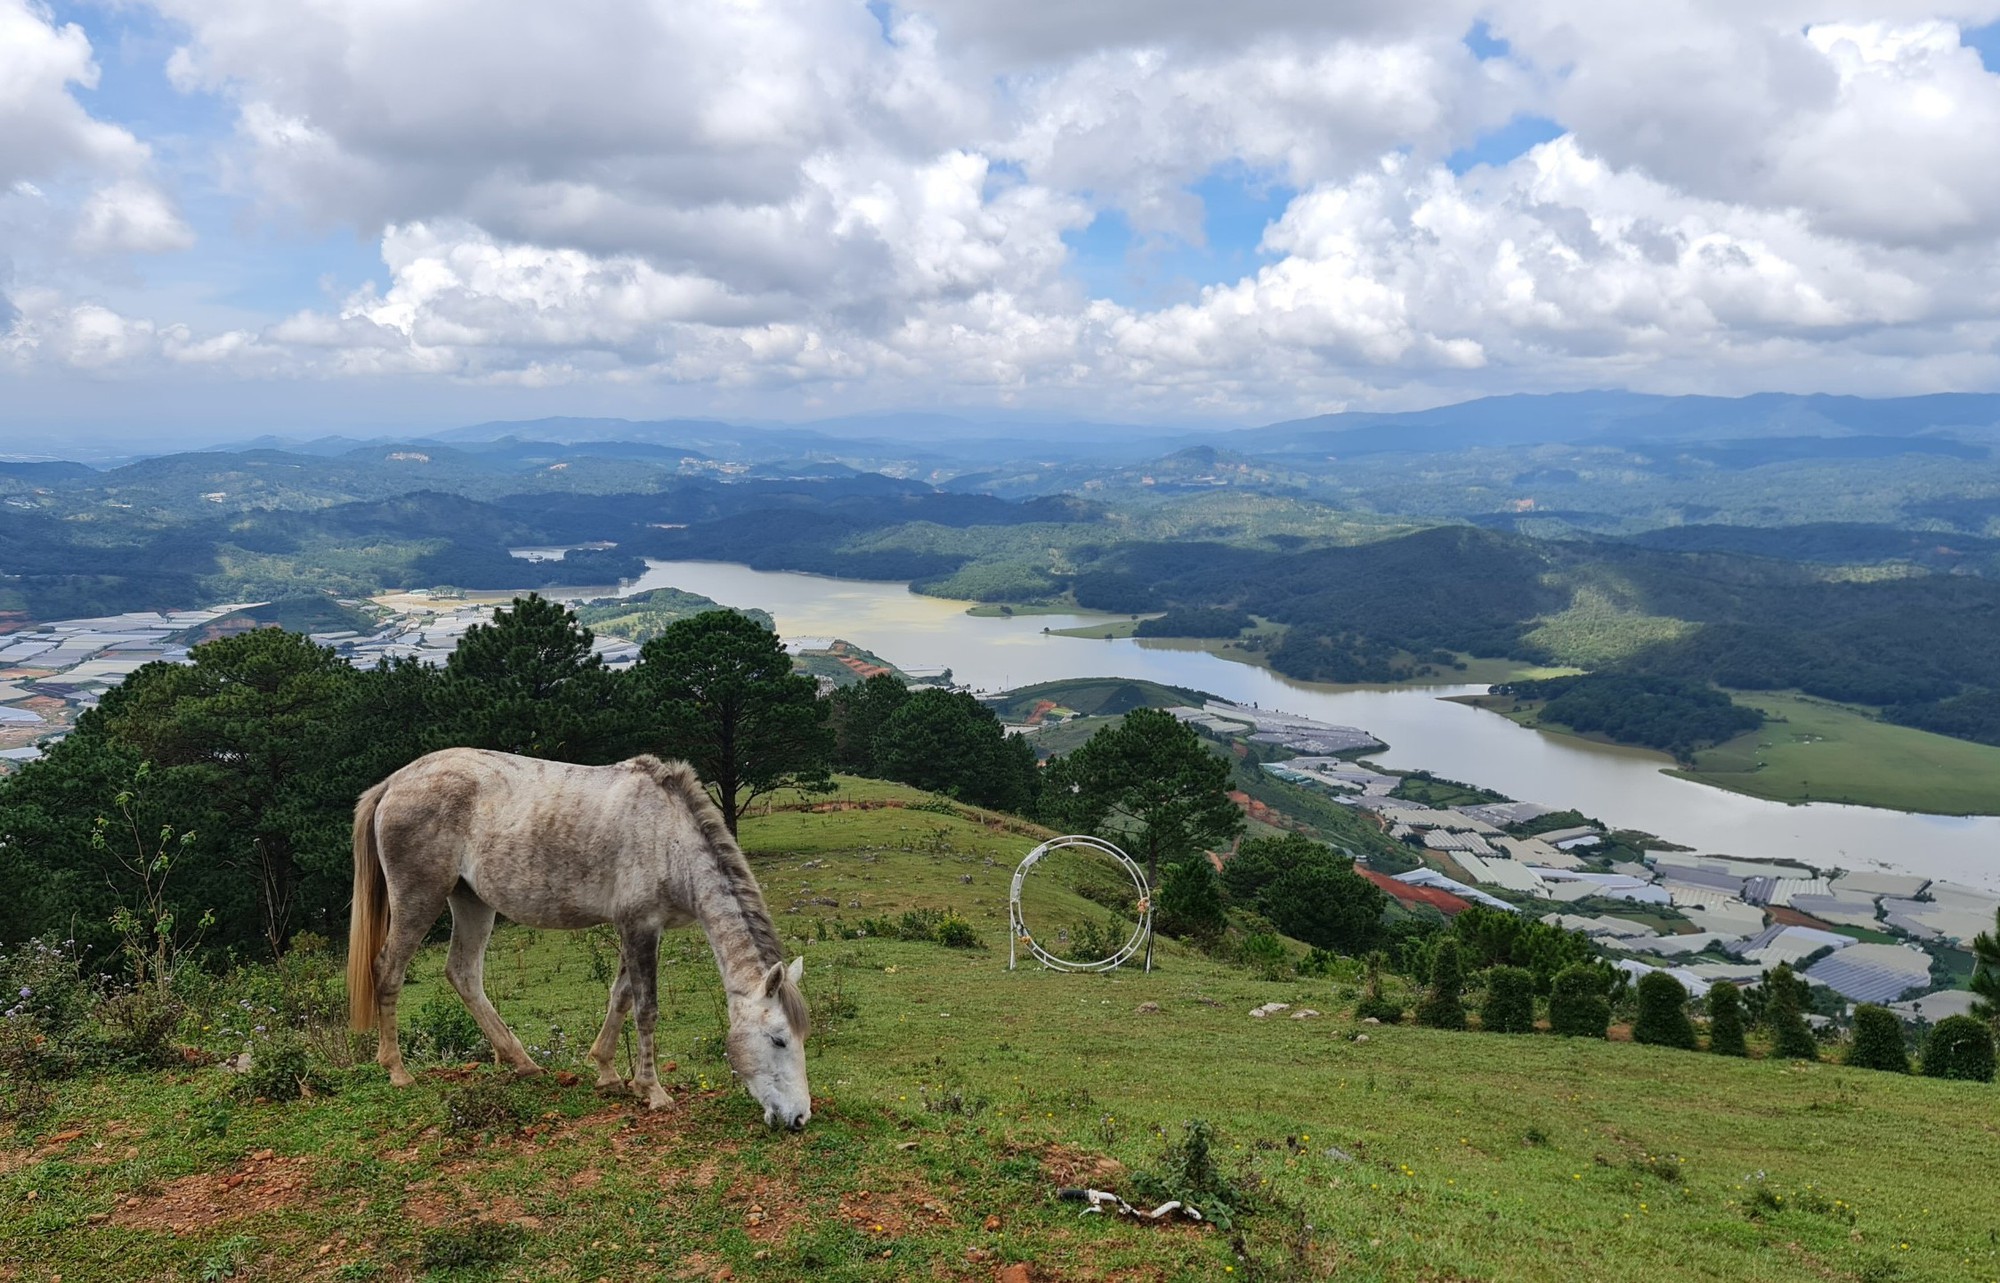 Tạm dừng tham quan tại khu du lịch núi Langbiang – Du lịch